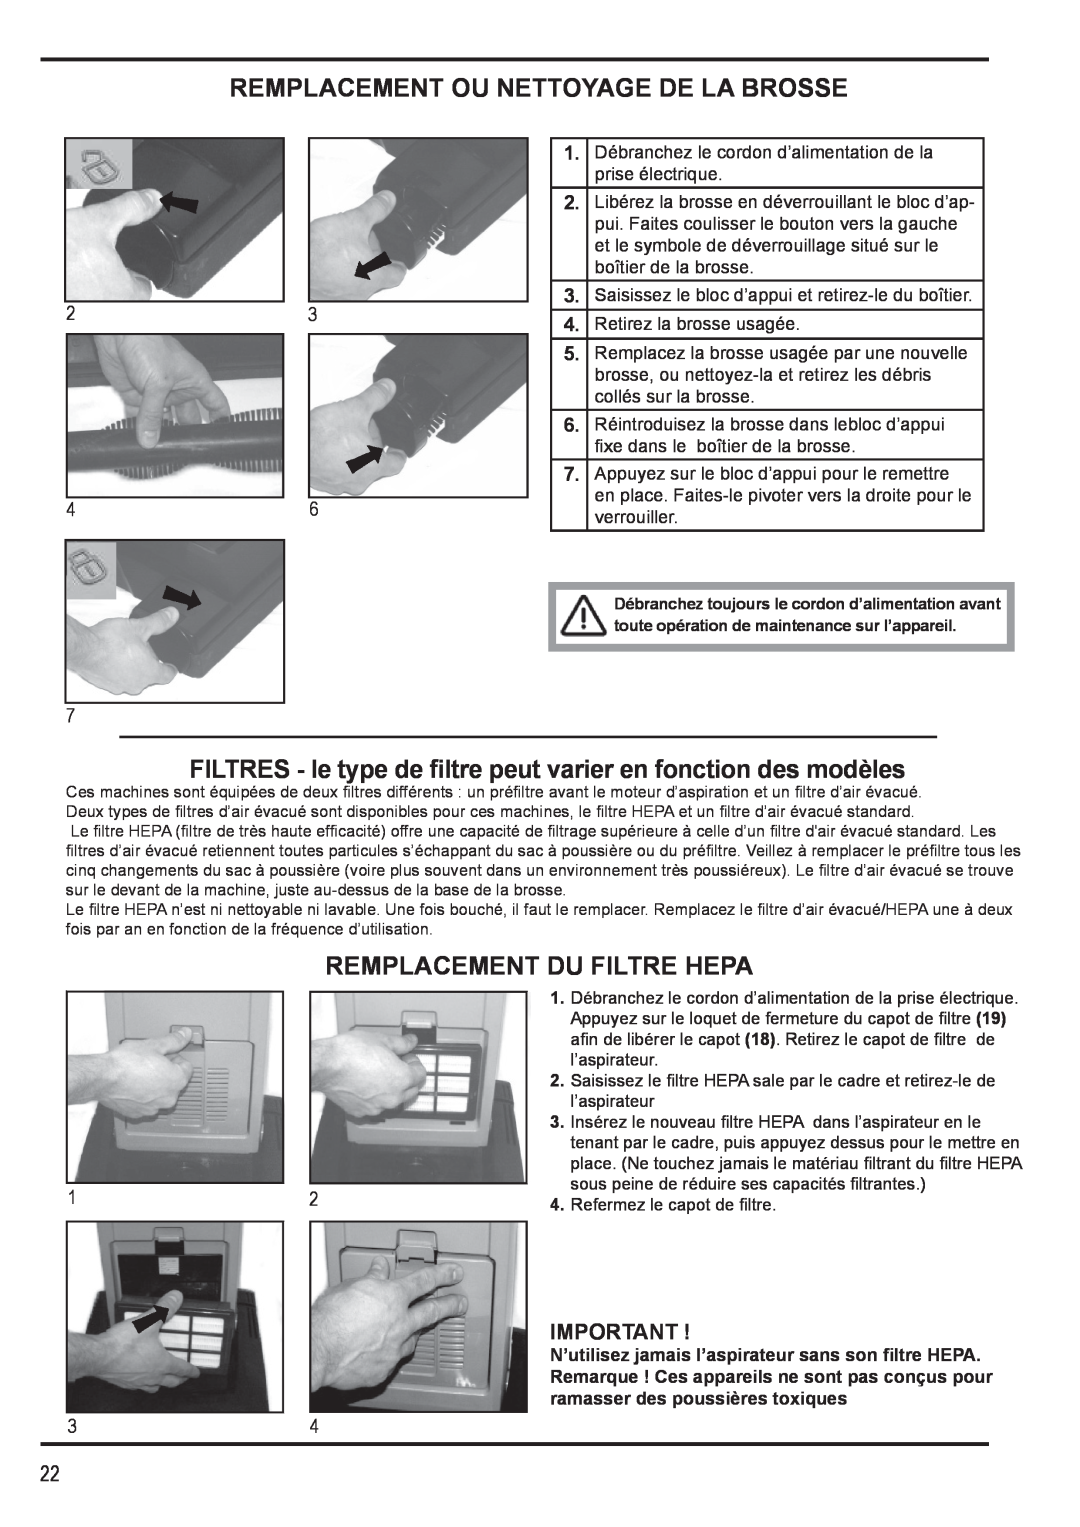 Nilfisk-Advance America 12H manual Remplacement Ou Nettoyage De La Brosse, Remplacement Du Filtre Hepa 